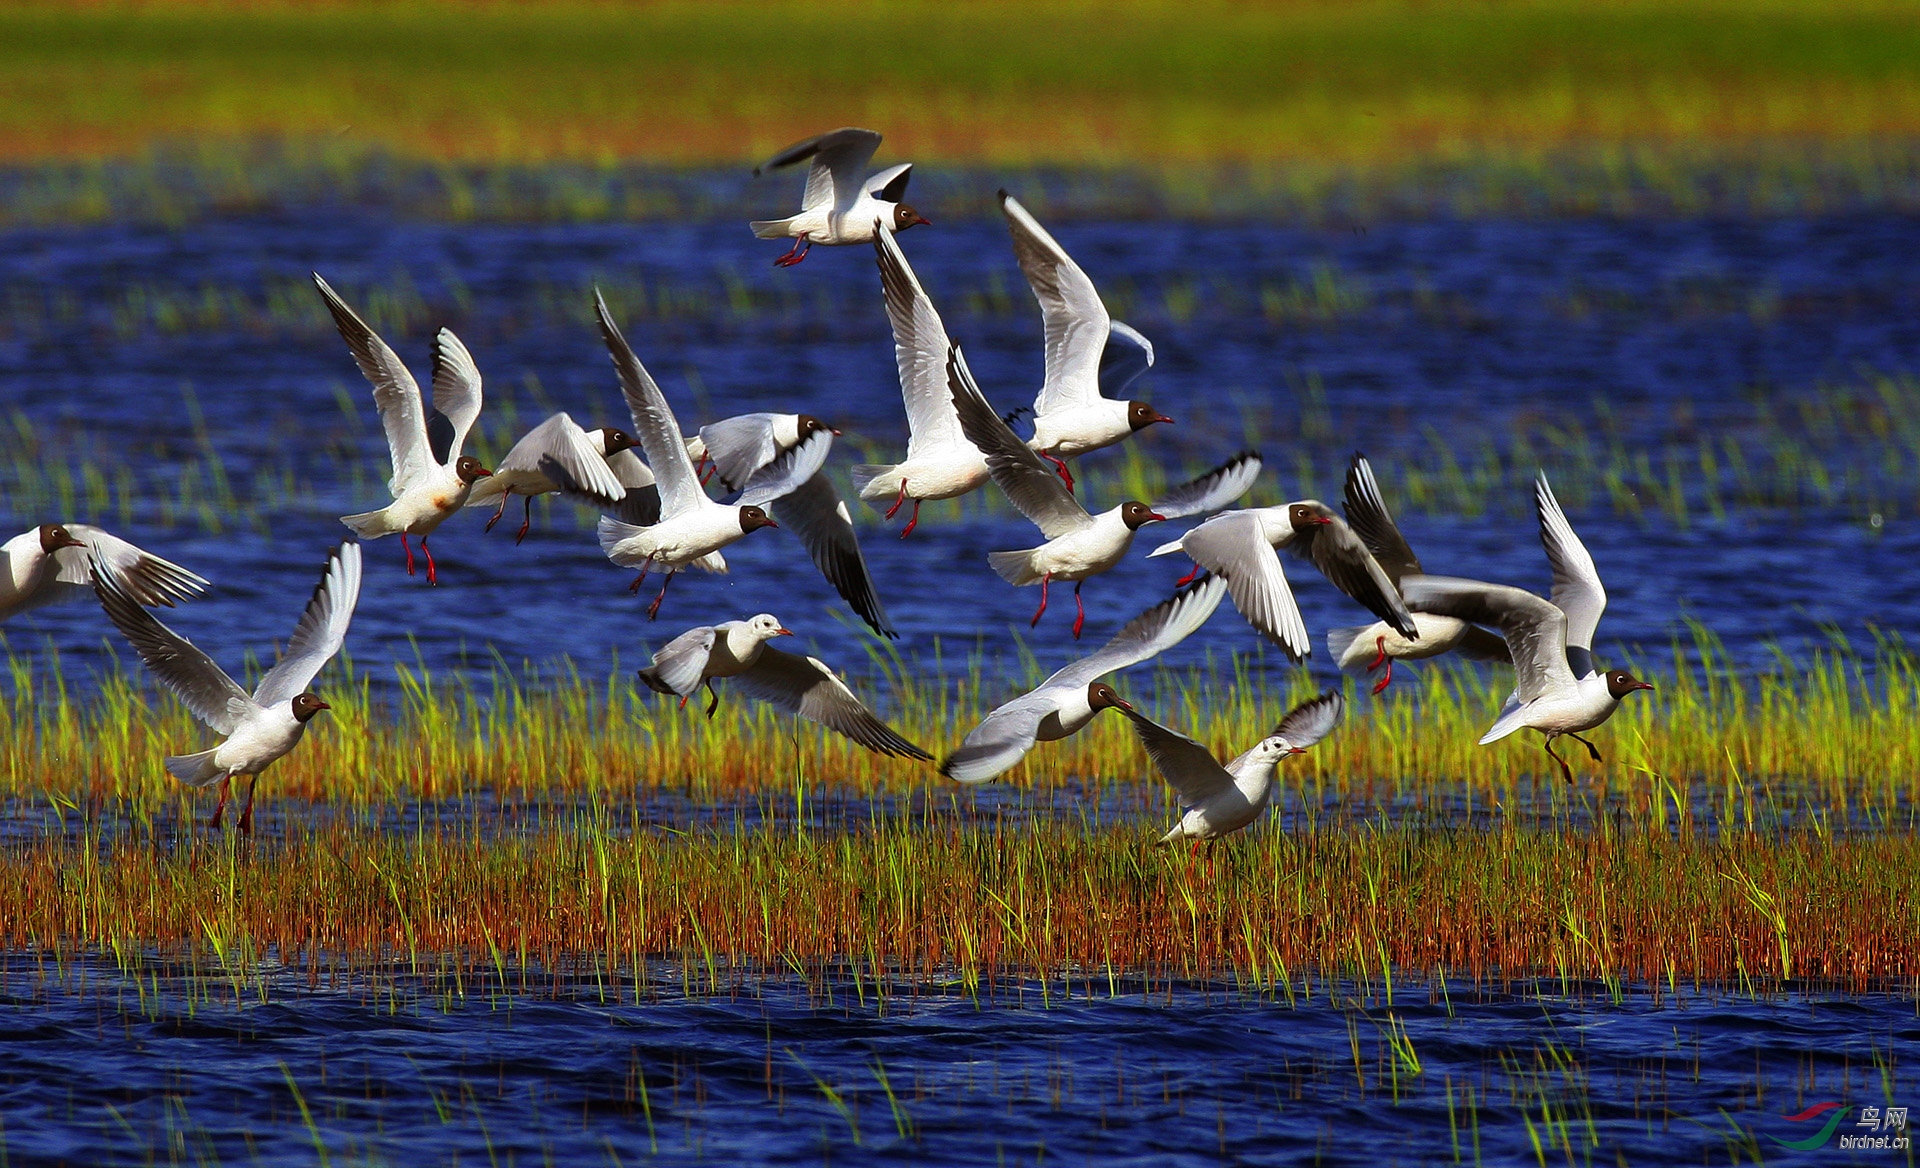 拍摄于辽宁盘锦：每年春季，成千上万的鸟类迁徙到这里，在湿地里觅食、嬉戏，形成一道亮丽的美景.jpg